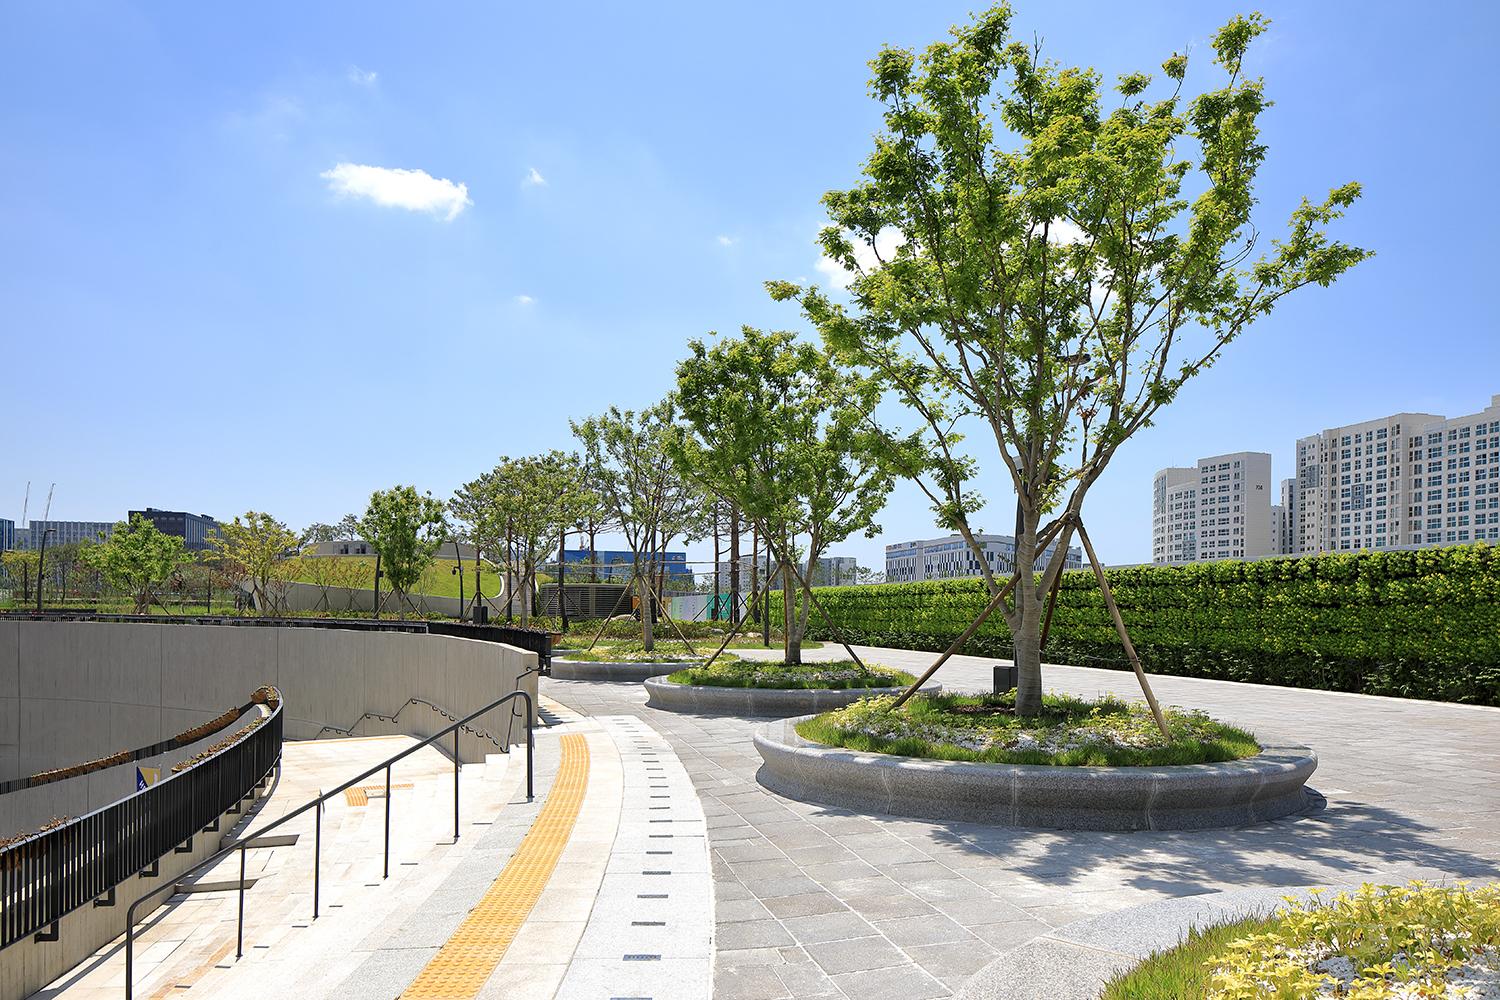 【韓國首爾新建廣場】特建於車站交界處 促進社區文化交流